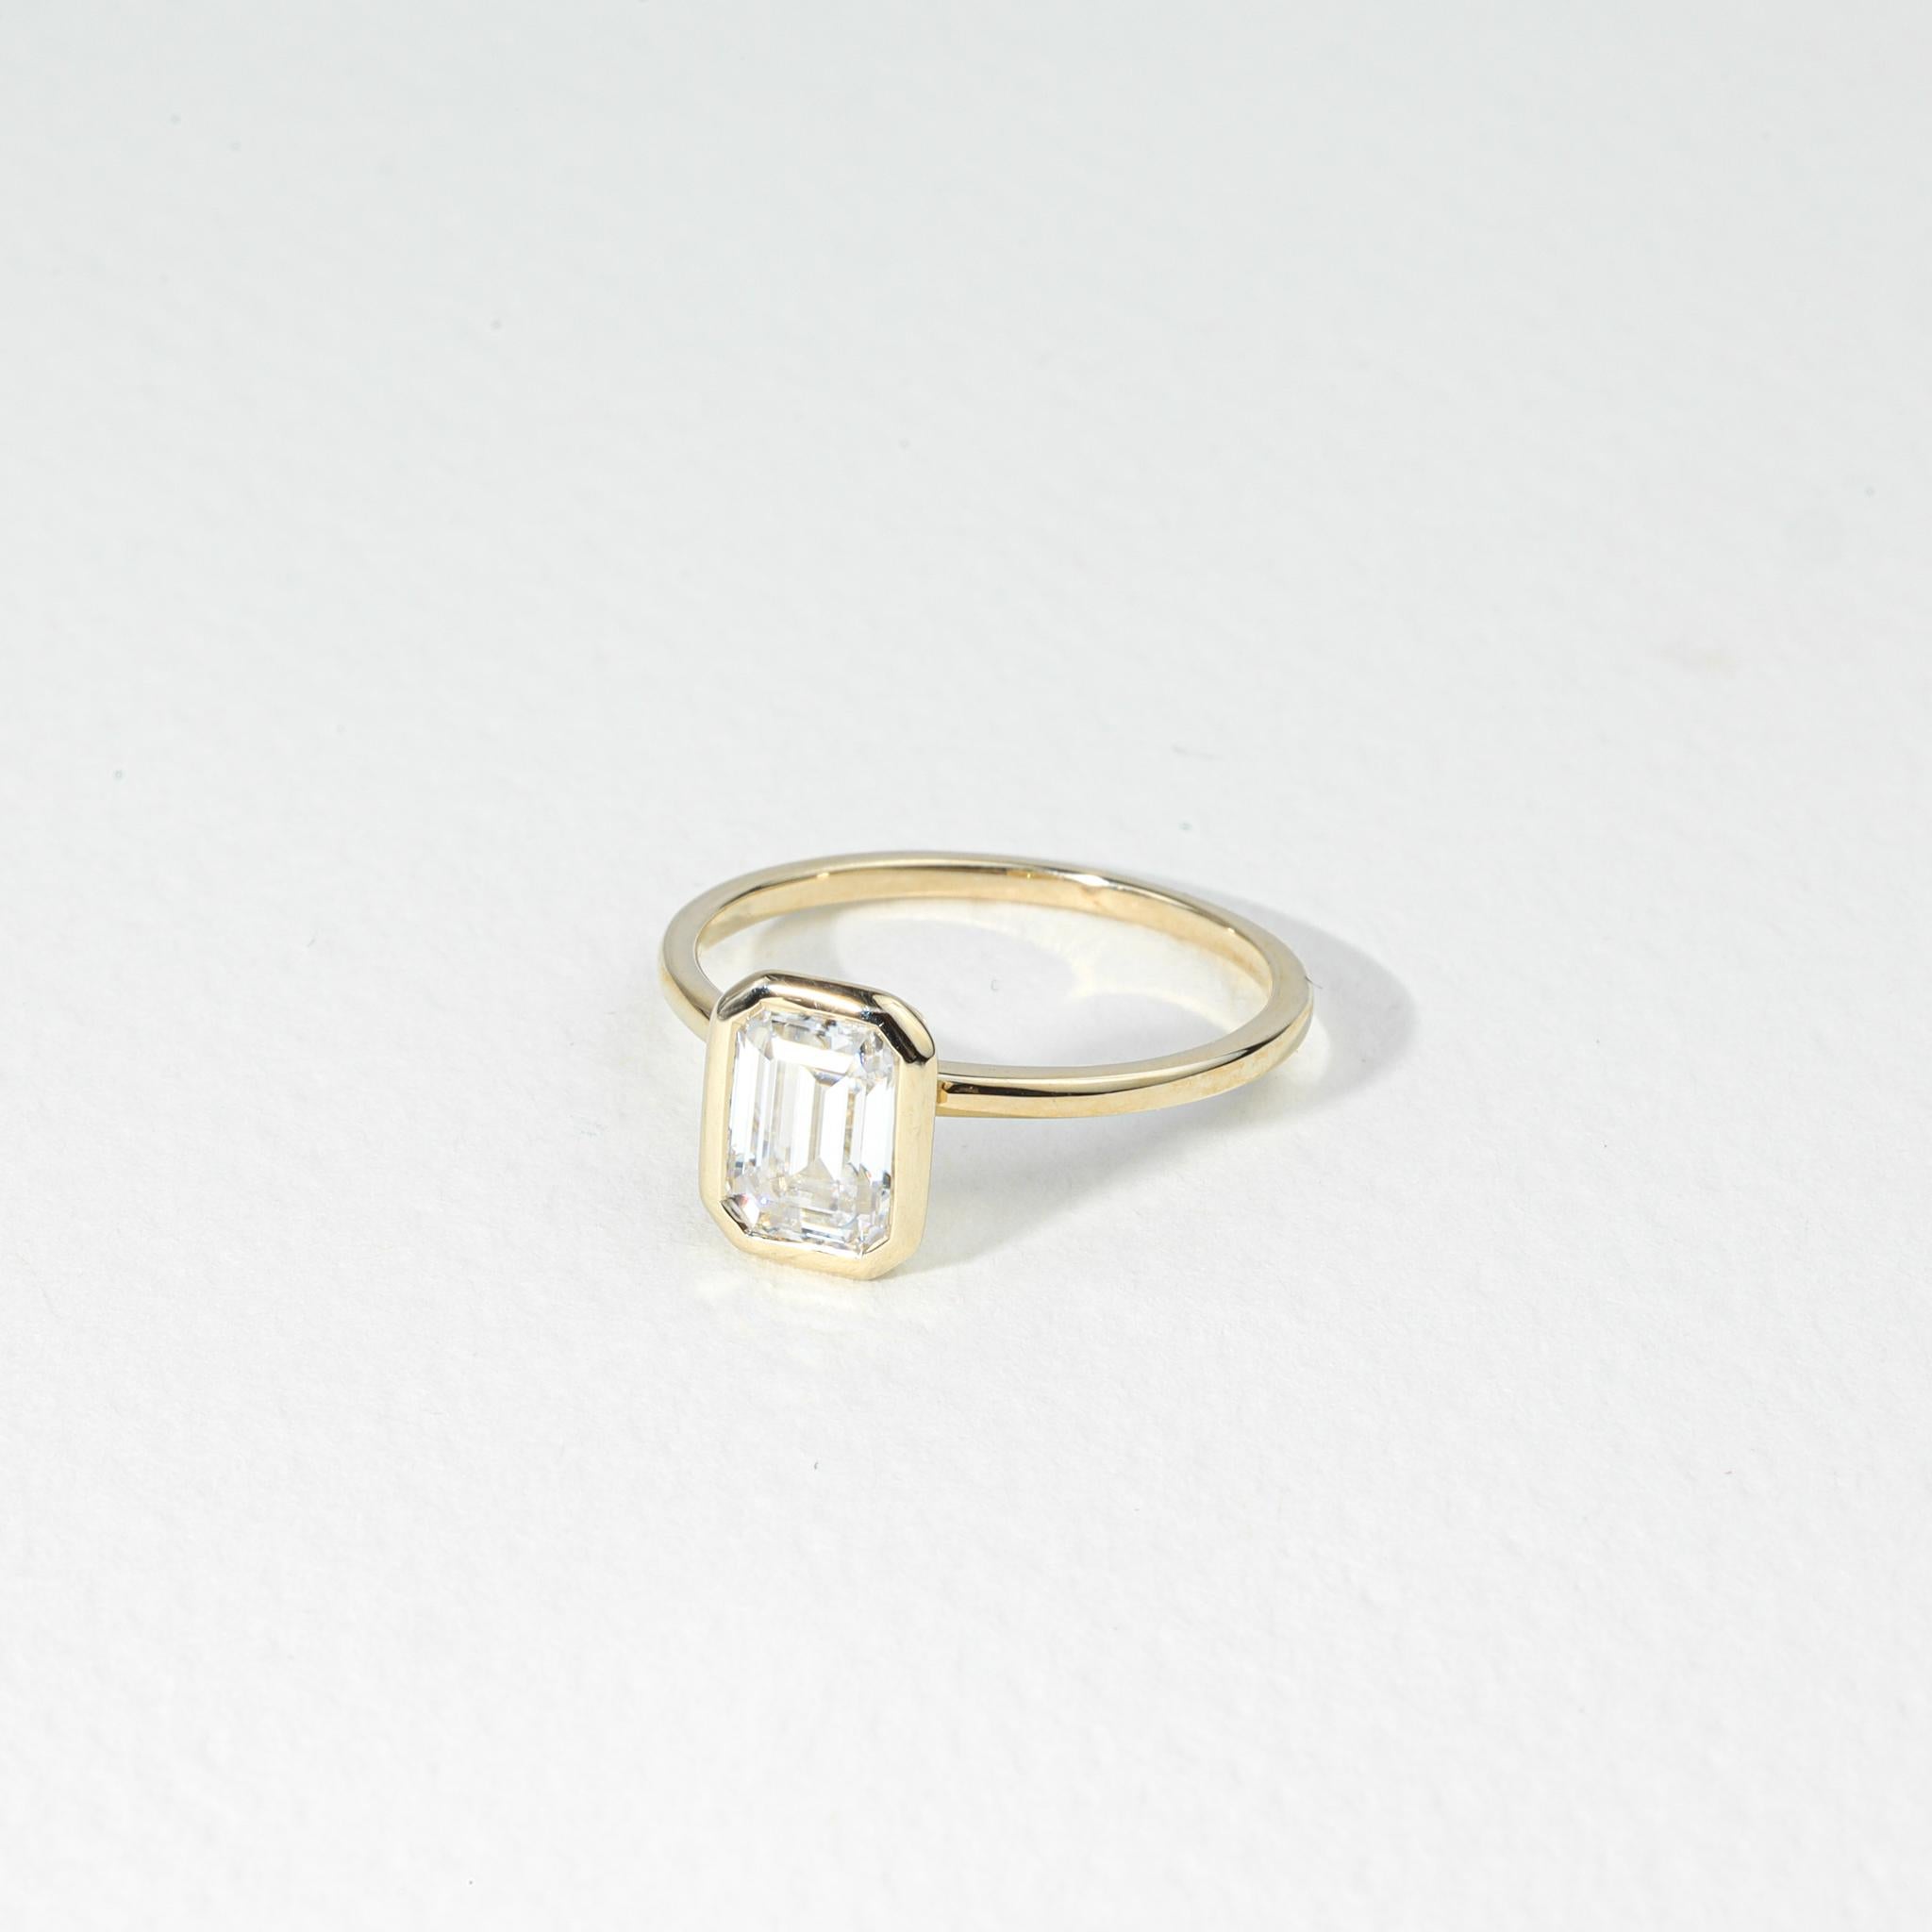 Rapport GIA Certified D VVS1, 1 Carat Emerald Cut Solitaire Diamond Engagement Ring

Disponible en or blanc 18k.

Le même design peut être réalisé avec d'autres pierres précieuses sur demande.

Détails du produit :

- Or massif Or jaune 18k 

-